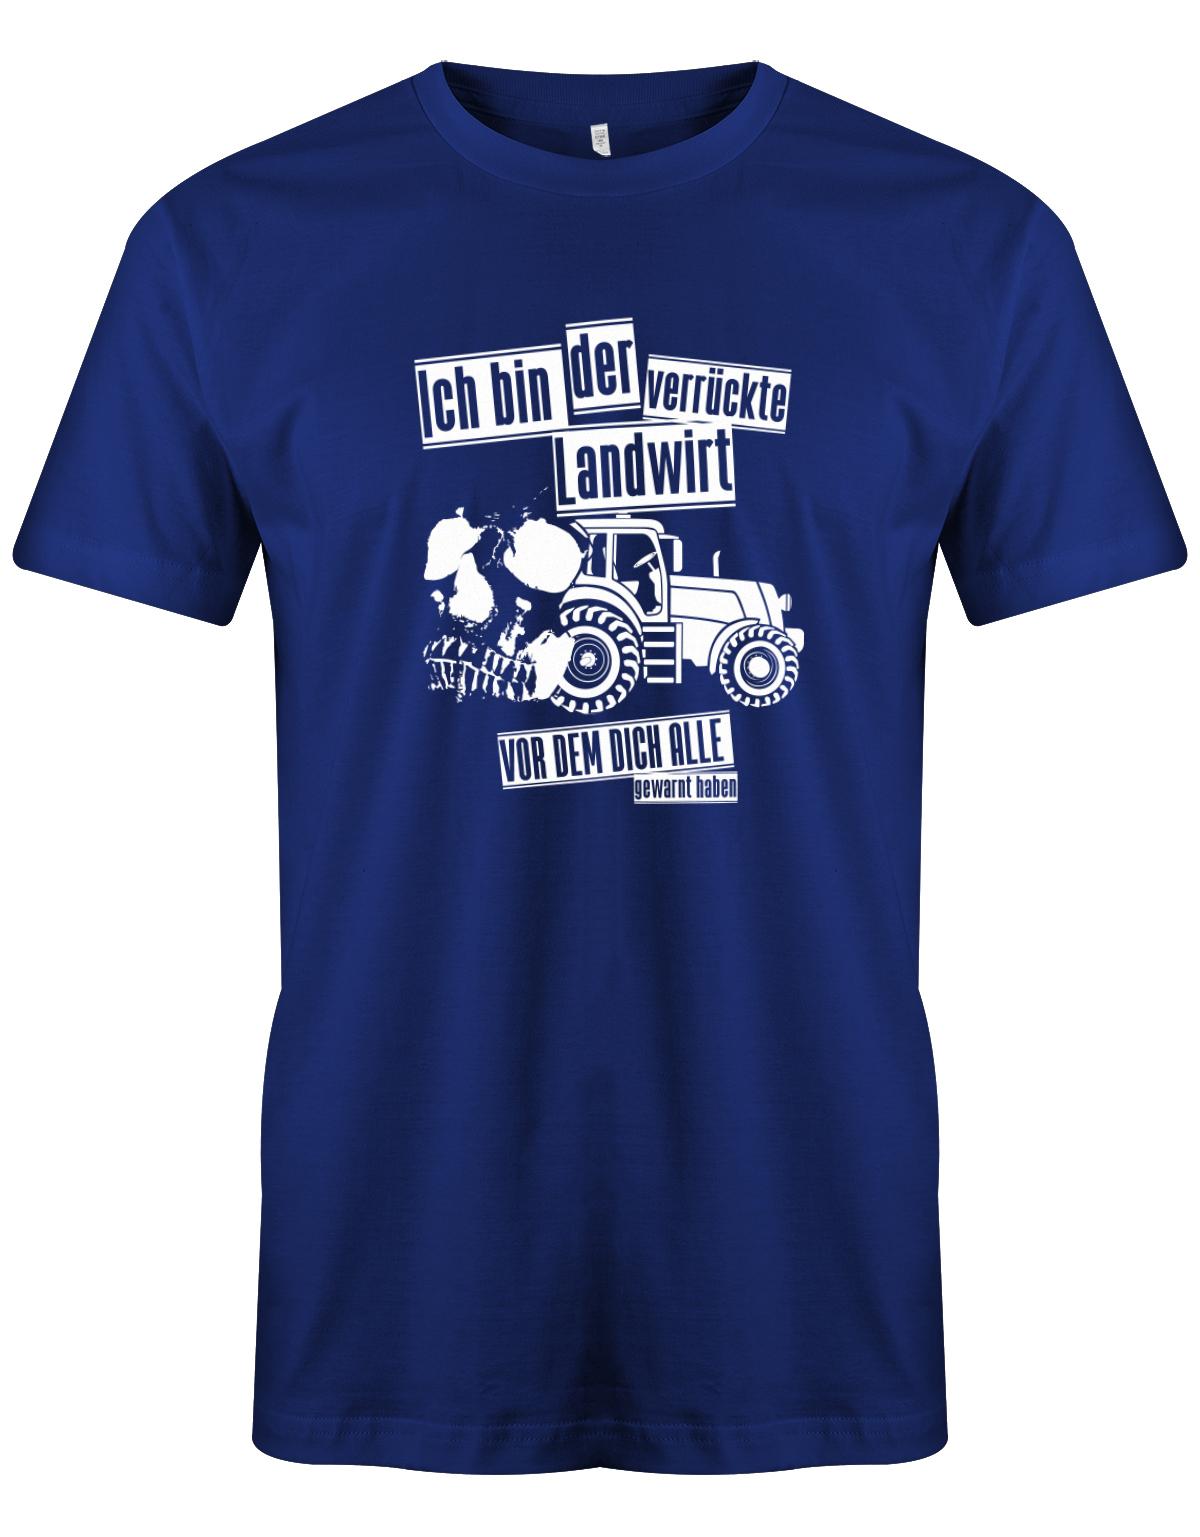 Landwirtschaft Shirt Männer - Ich bin der verrückte Landwirt vor dem dich alle gewarnt haben. Royalblau